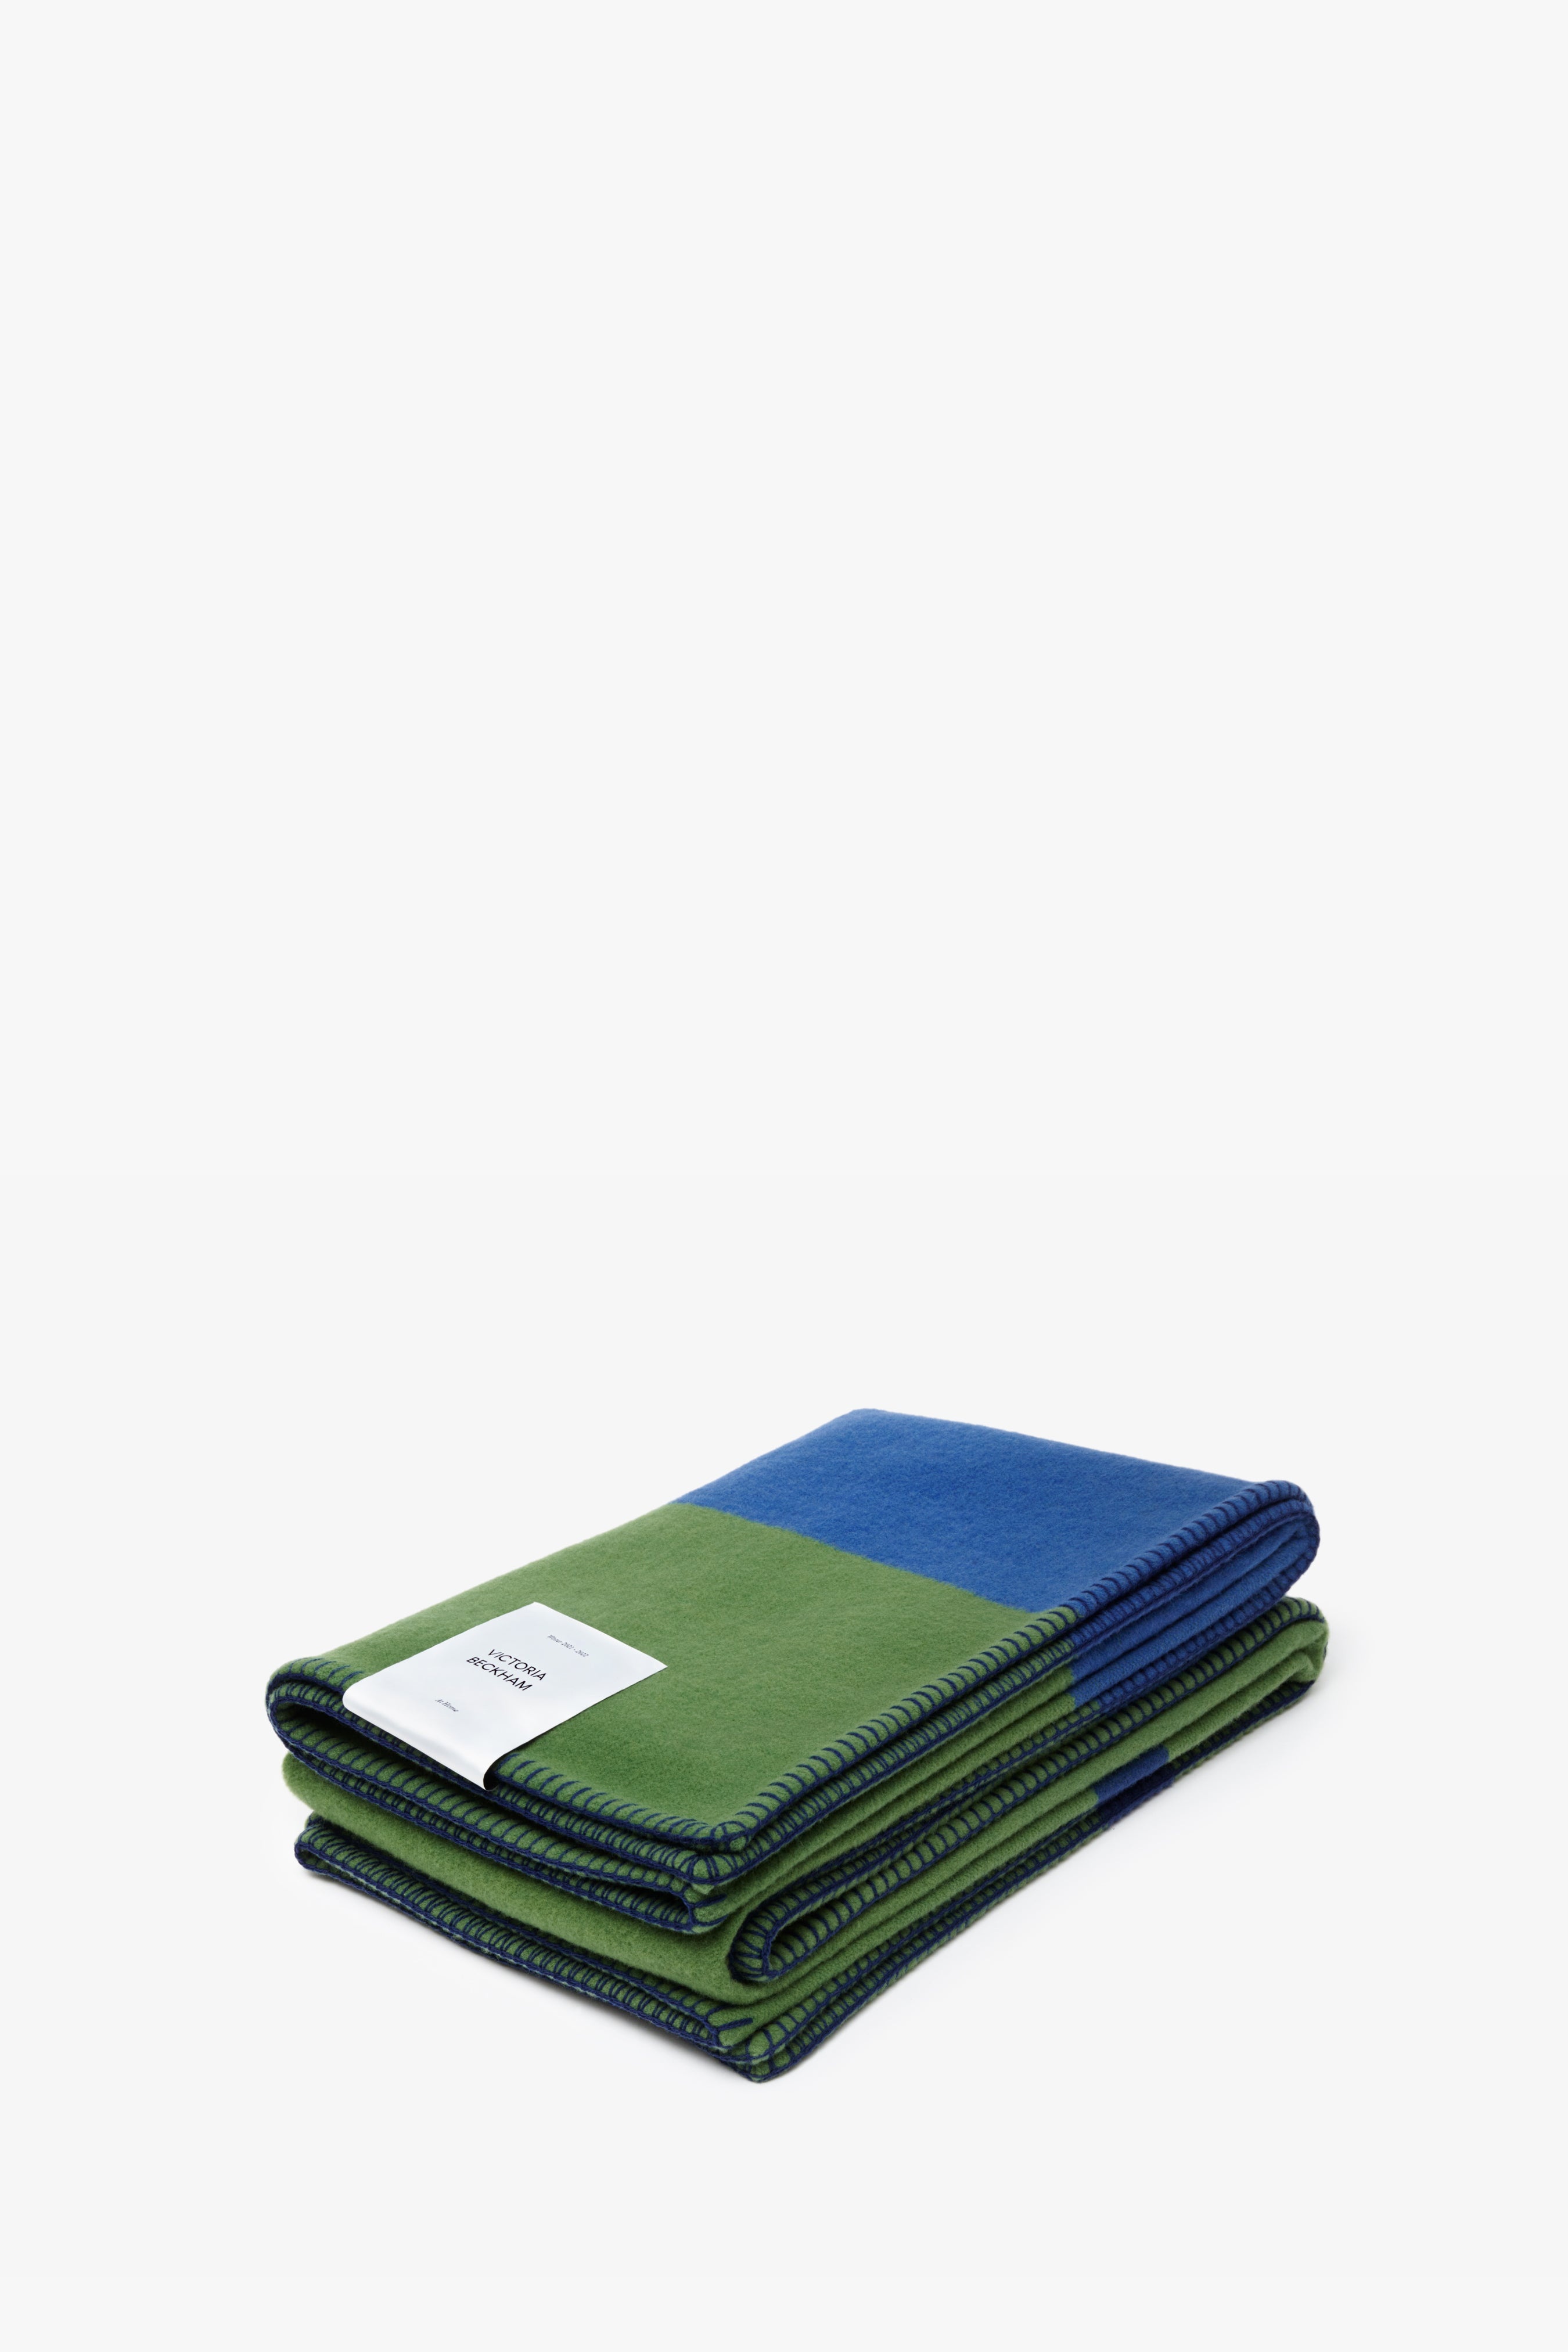 Posh Blanket in Green & Blue - 2